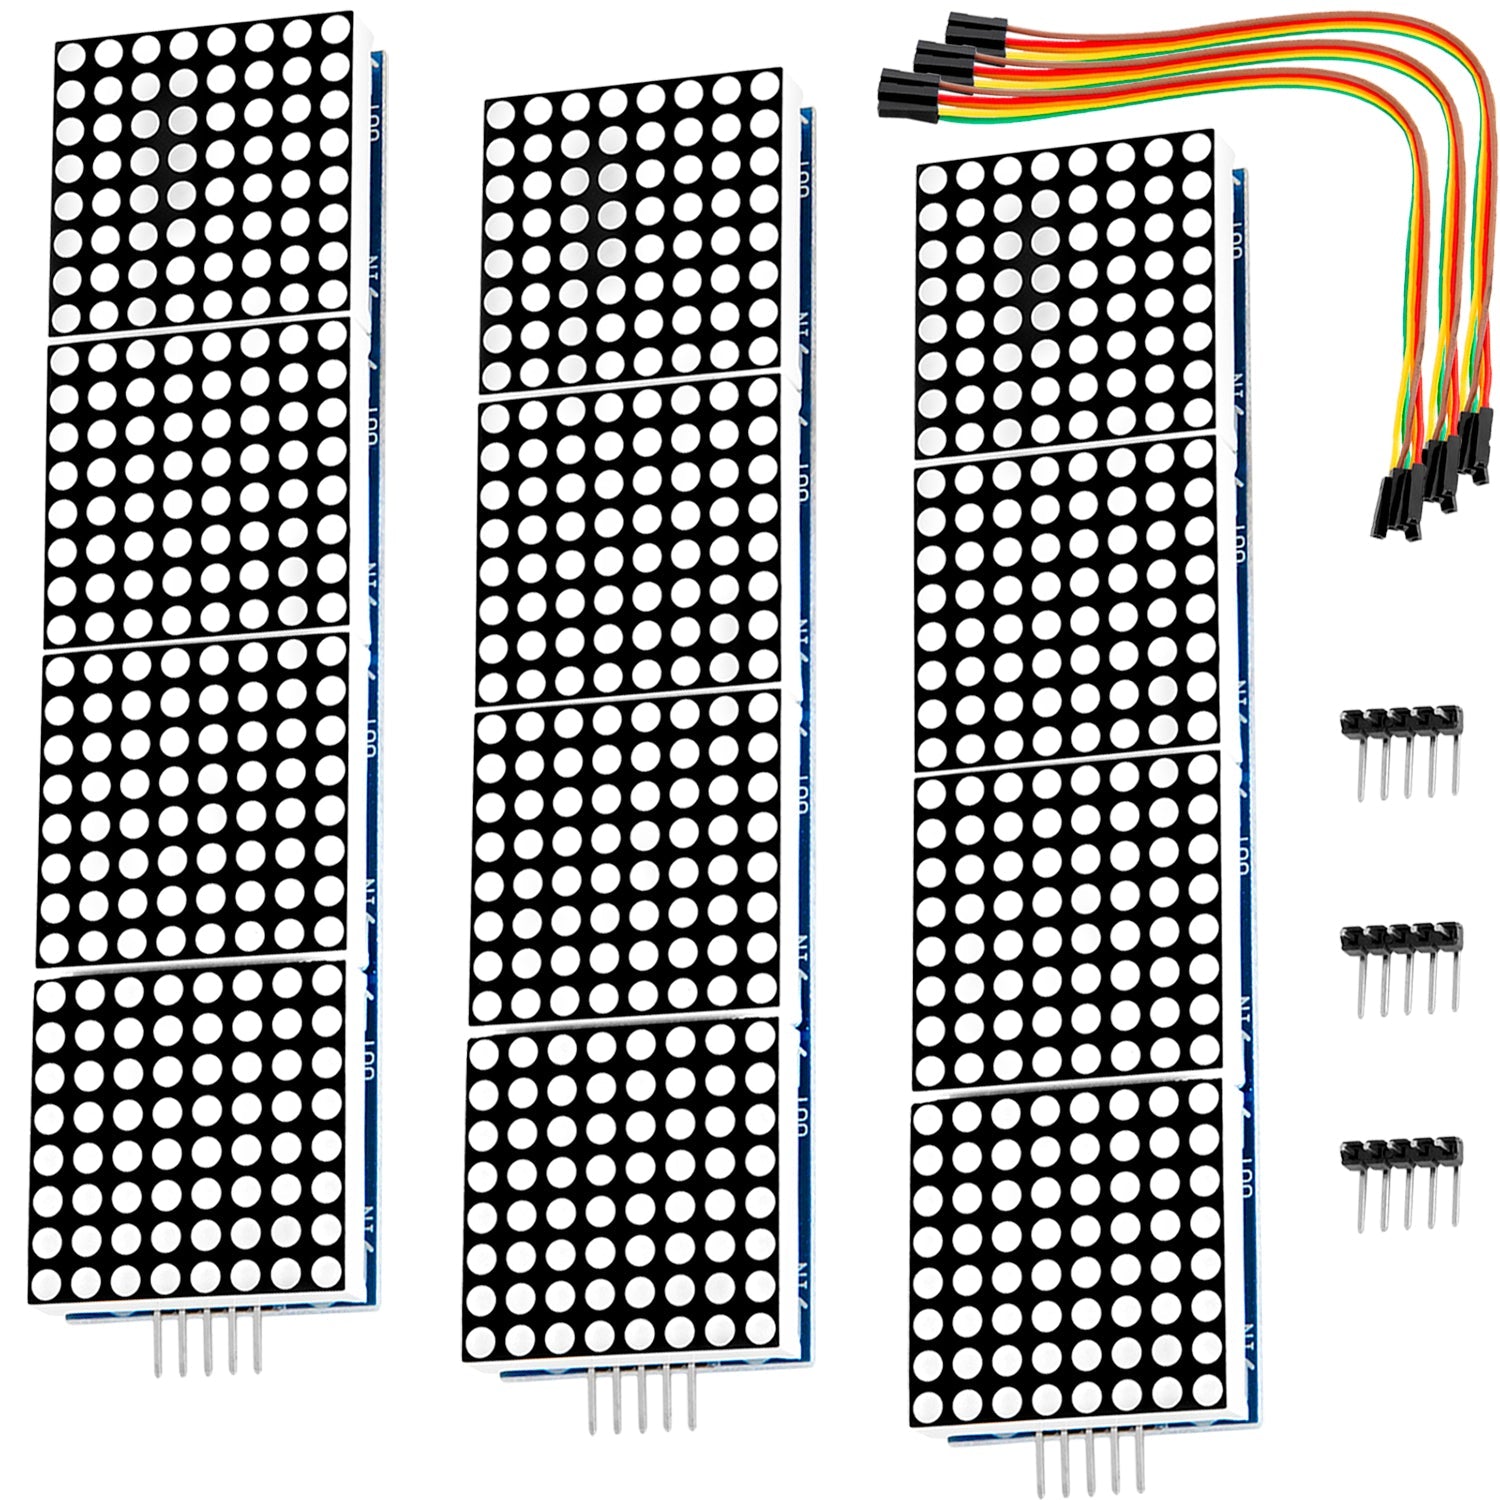 Affichage de matrice LED - 4 x 64series